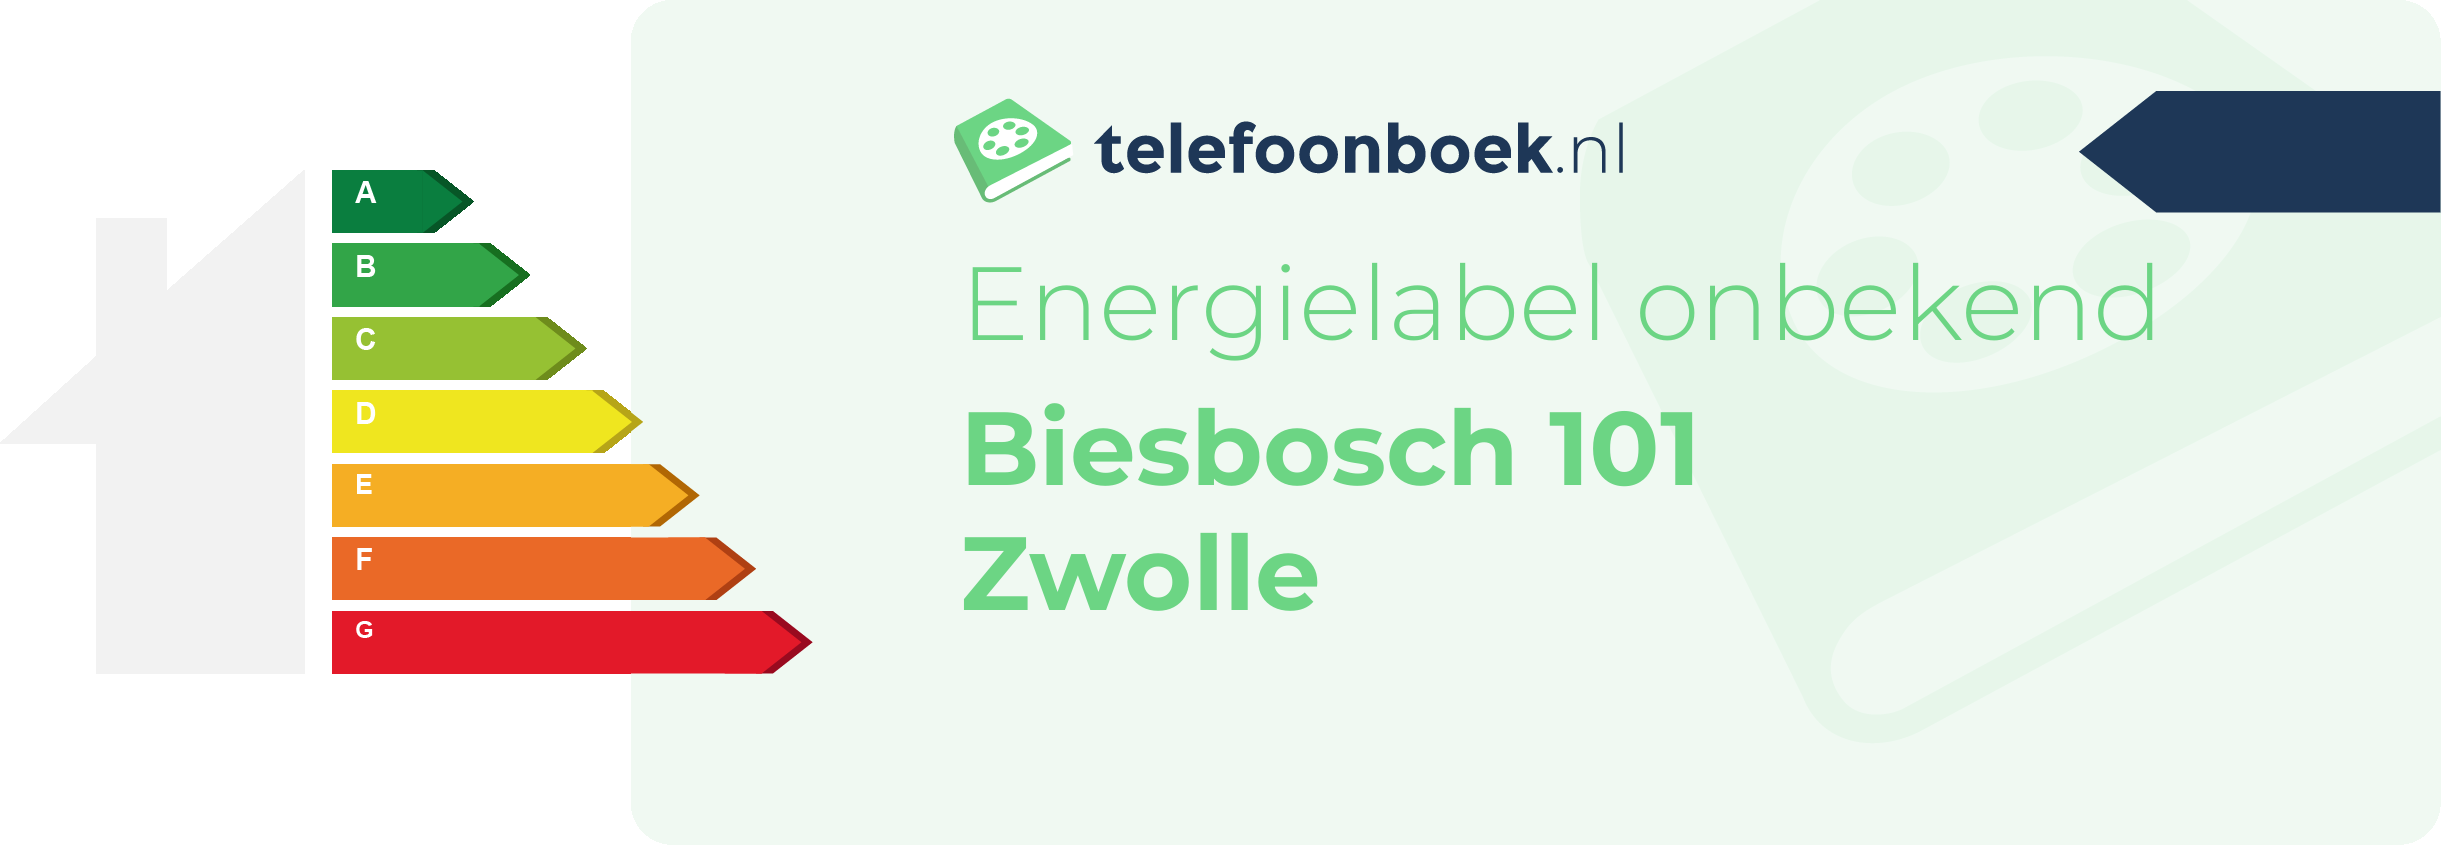 Energielabel Biesbosch 101 Zwolle